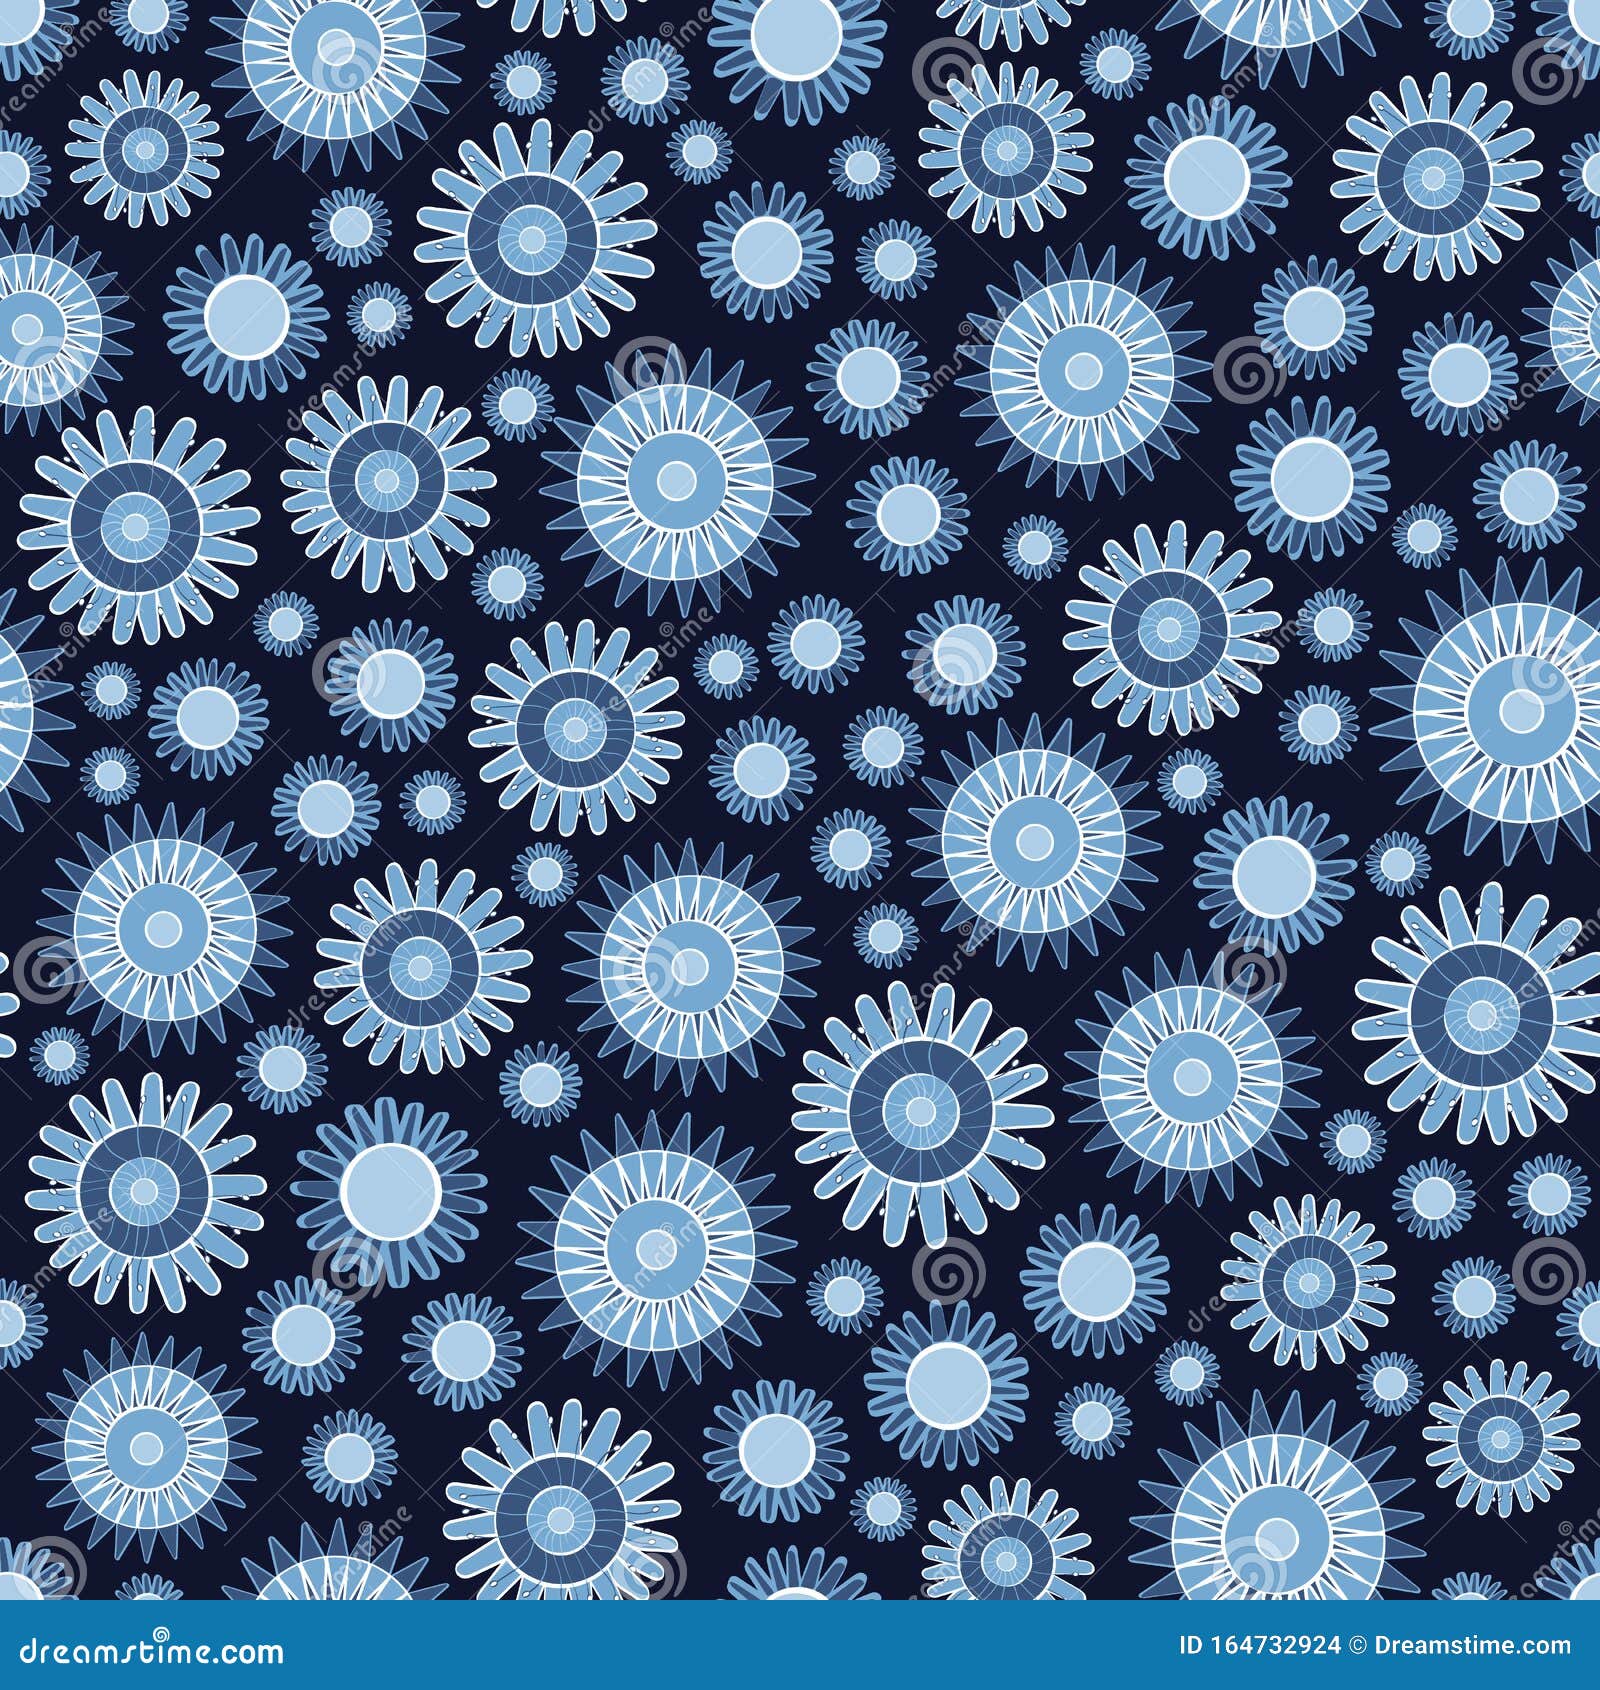 Векторные голубые цветы, раскрашенные на темно-синем фоне Предыстория  текстильных изделий, карт, производства, обоев Стоковое Фото - изображение  насчитывающей сторонника, кровопролитное: 164732924